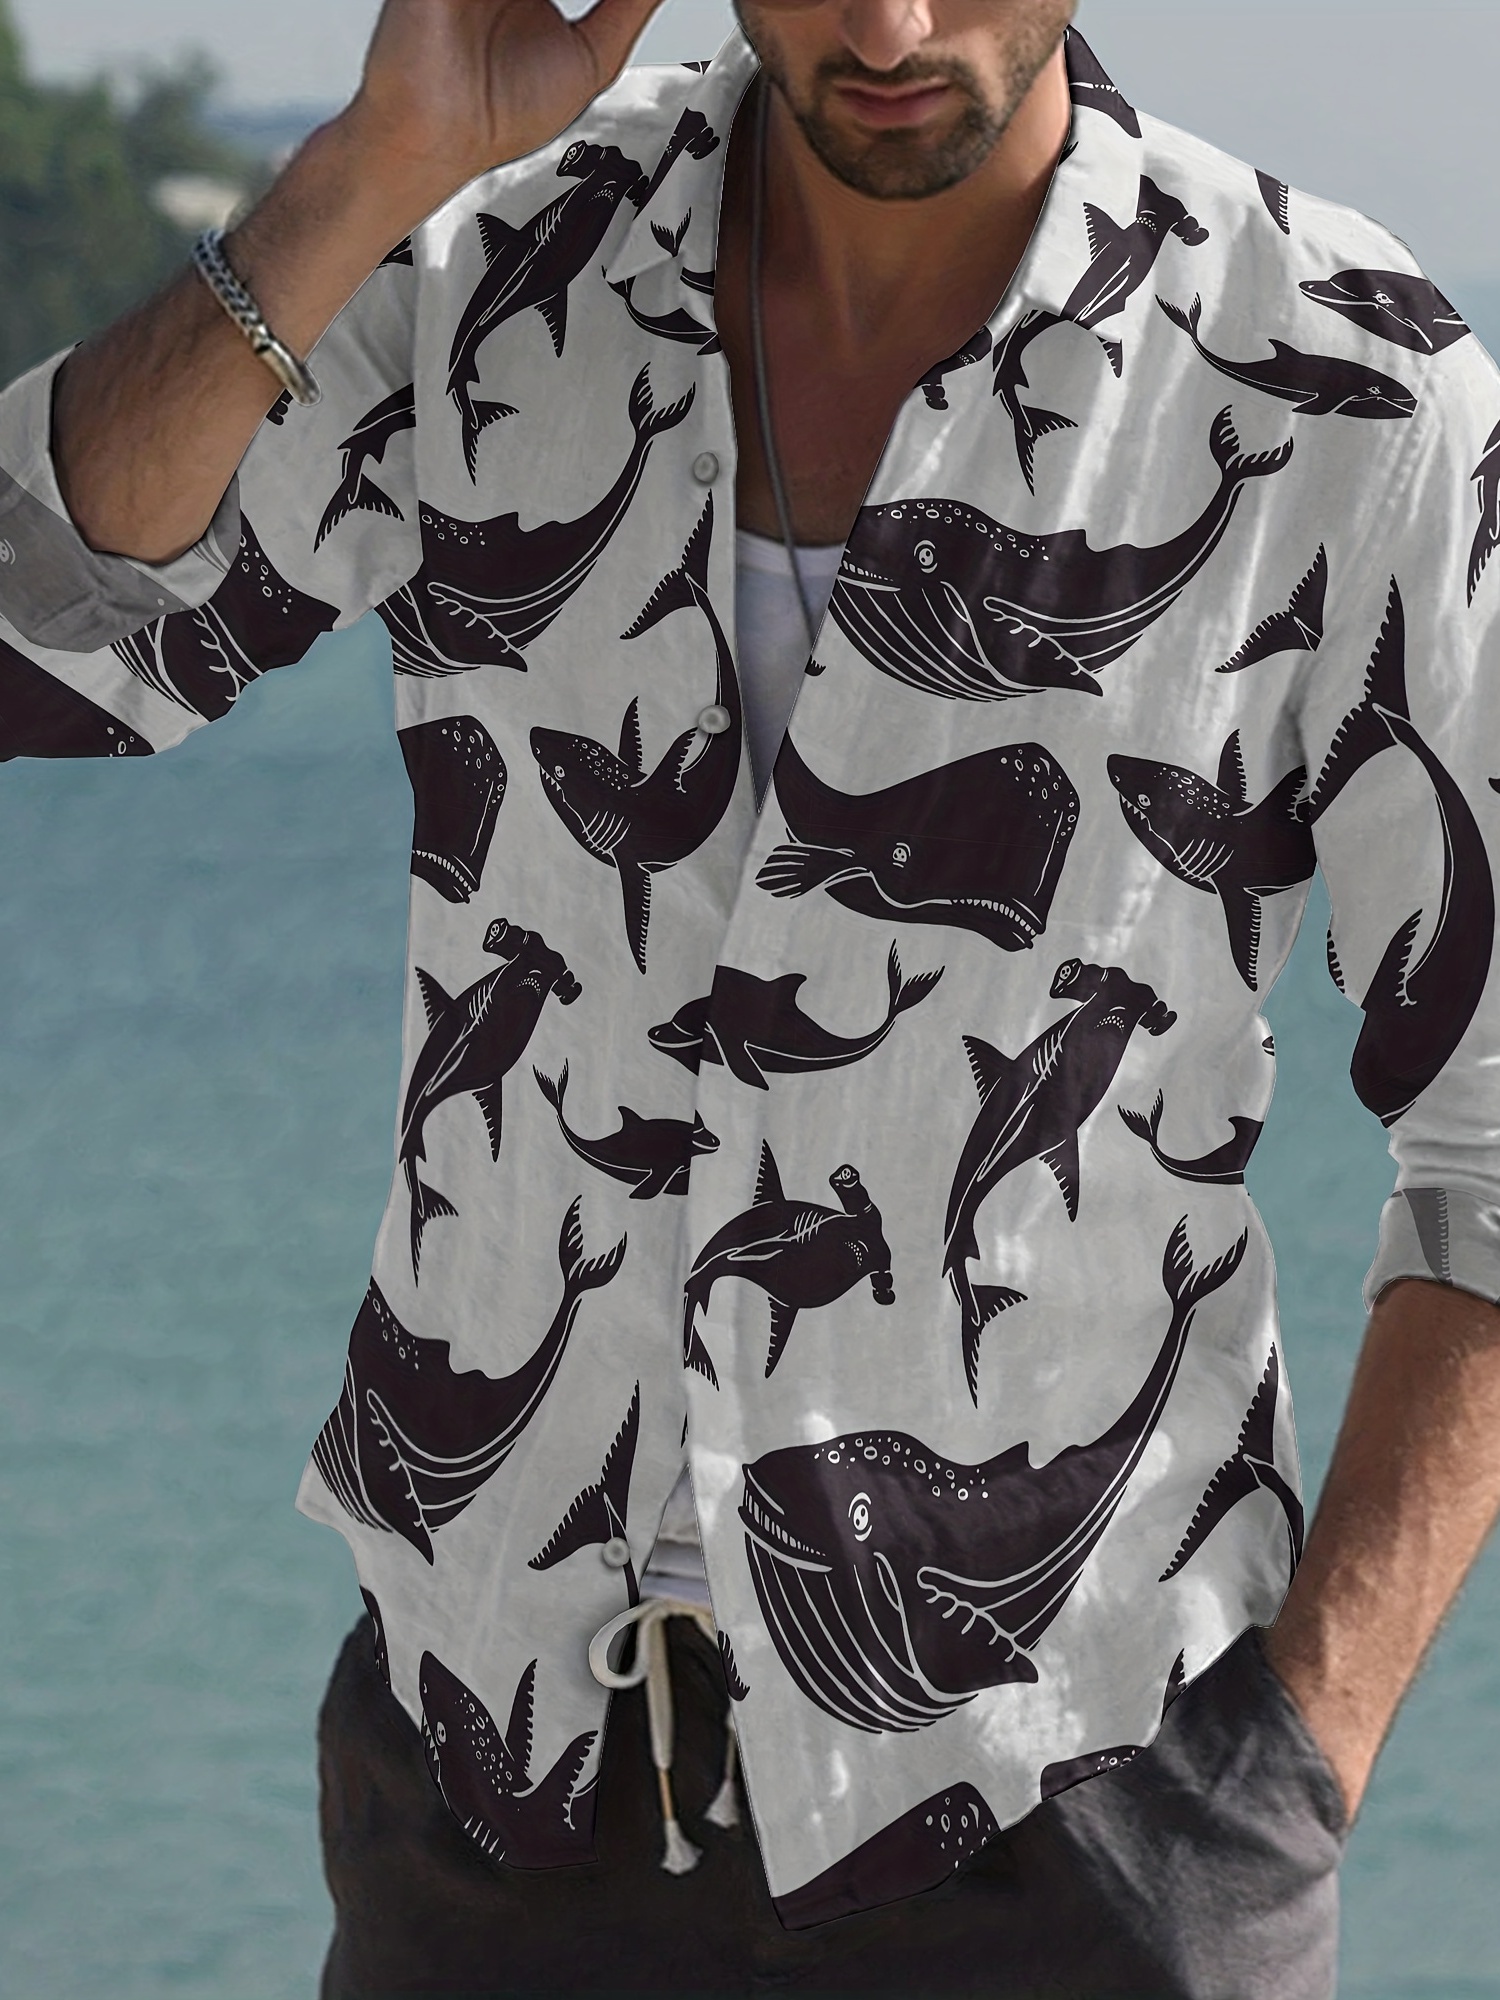 Men's Shark Print Hawaiian Shirt - Trendy and Comfy Summer Button Up